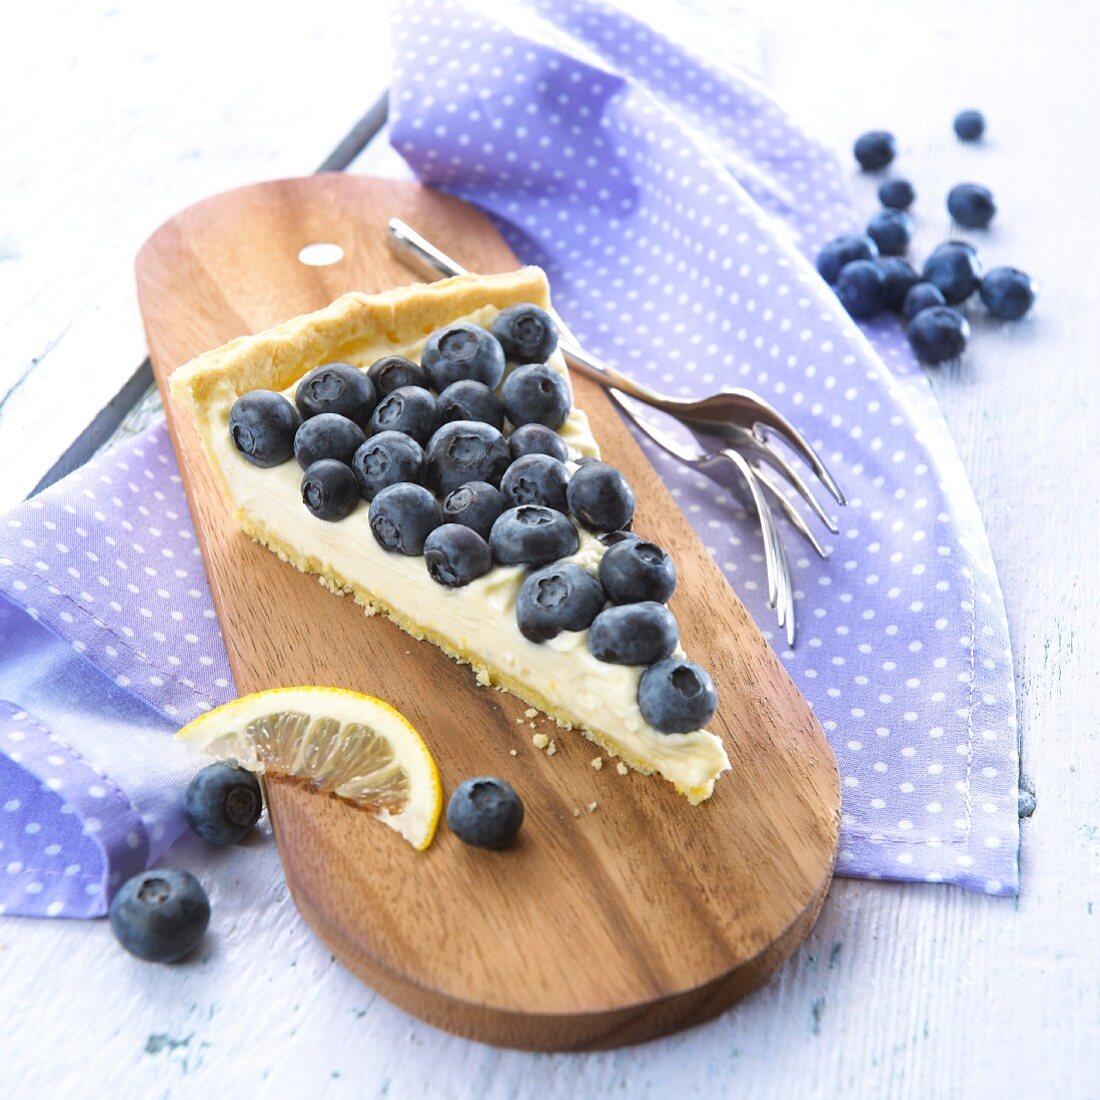 Blueberry and mascarpone tart